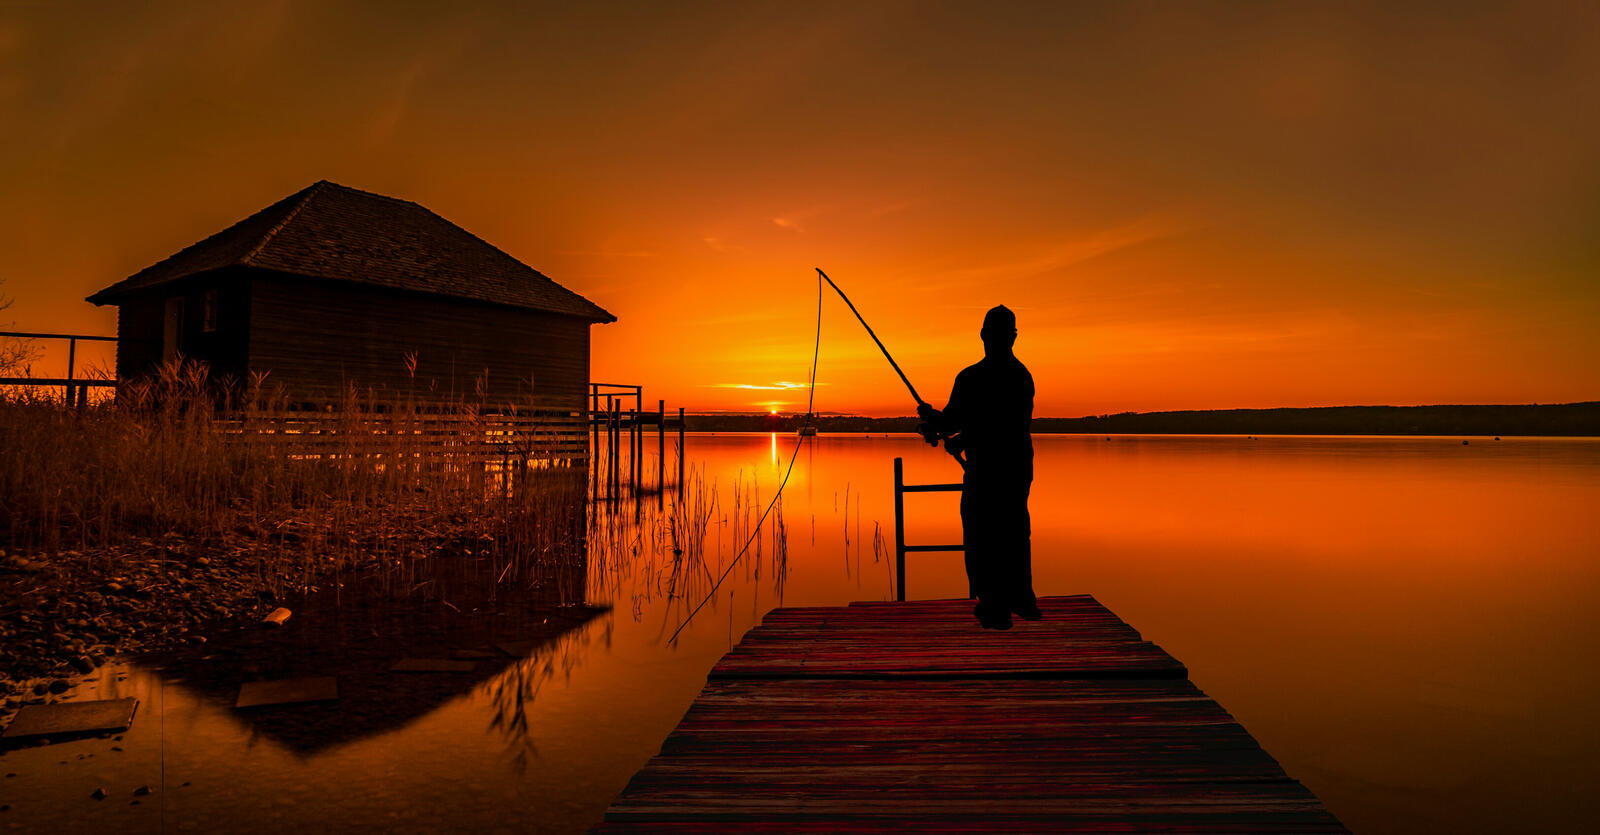 Бесплатное фото Силуэт рыбака на деревянном мостике рядом с деревянным домиком на закате